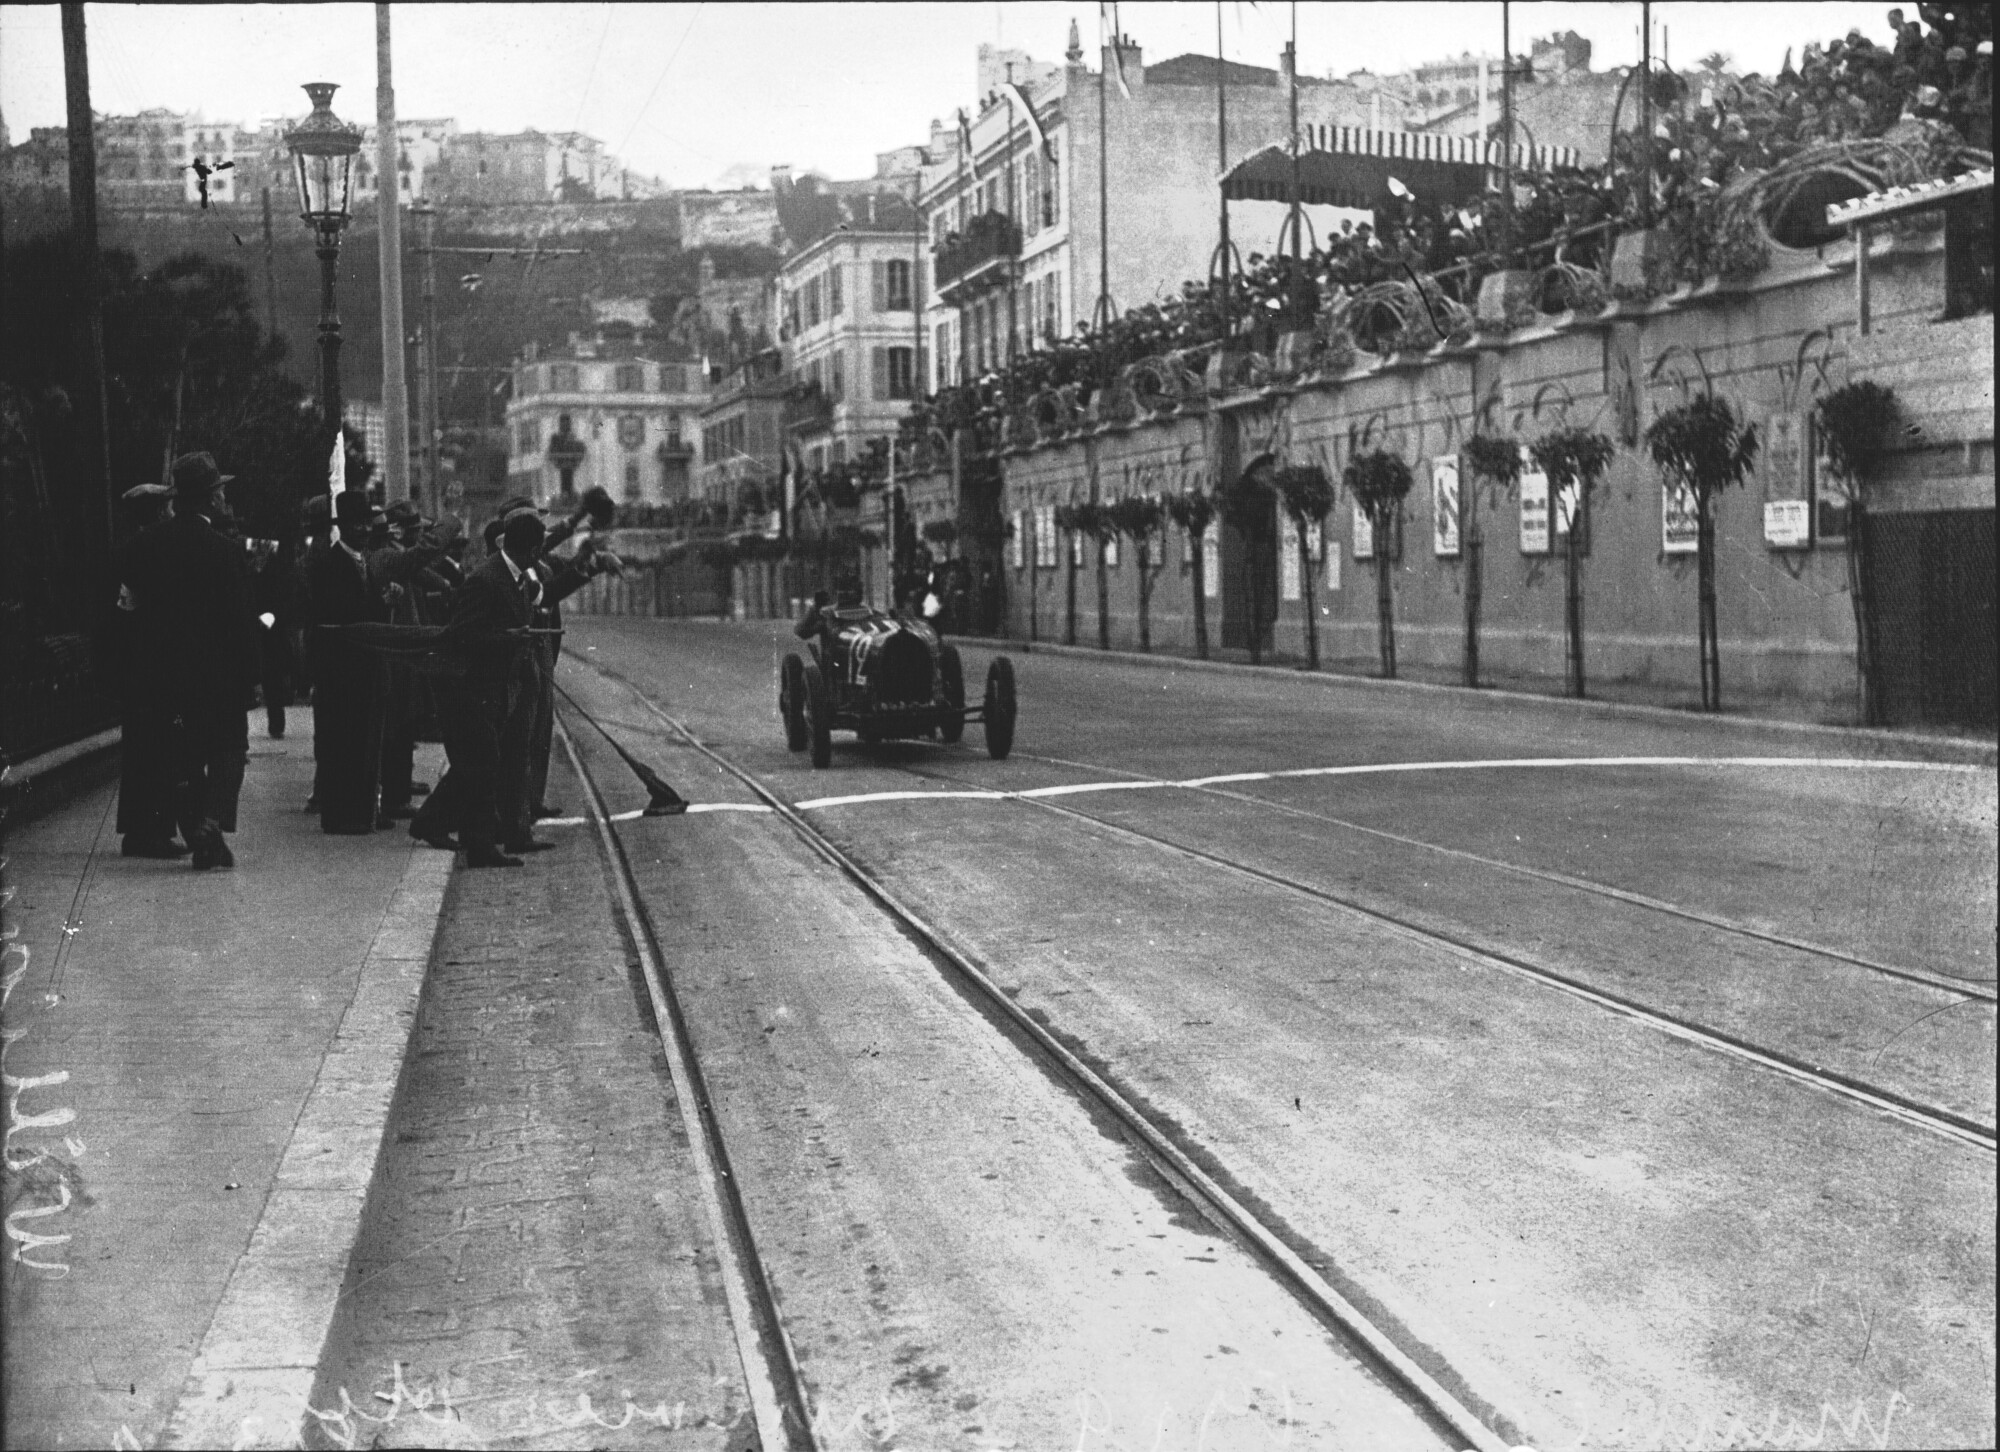 William_Grover-Williams_at_the_1929_Monaco_Grand_Prix